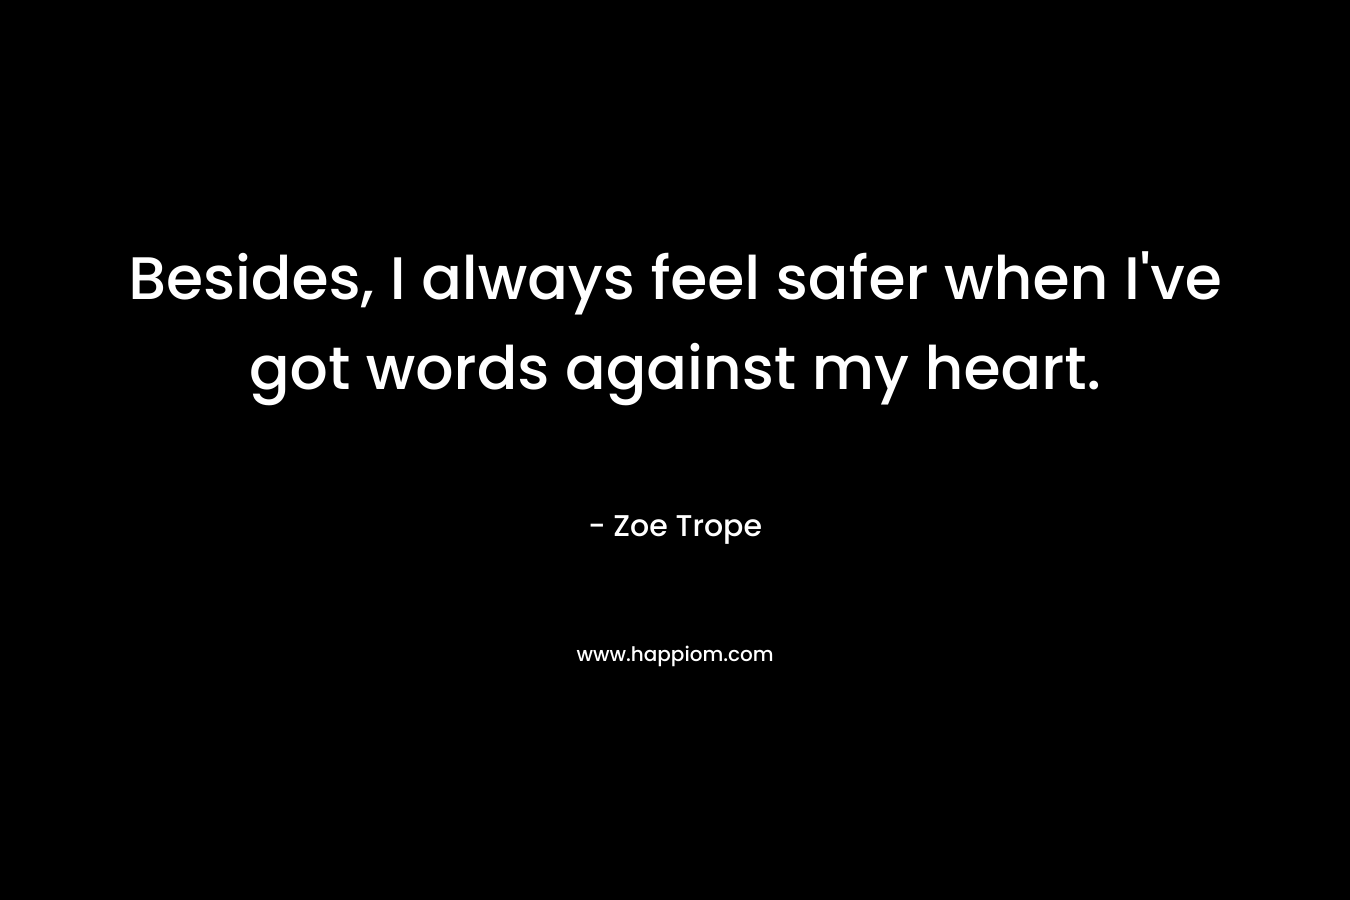 Besides, I always feel safer when I've got words against my heart.